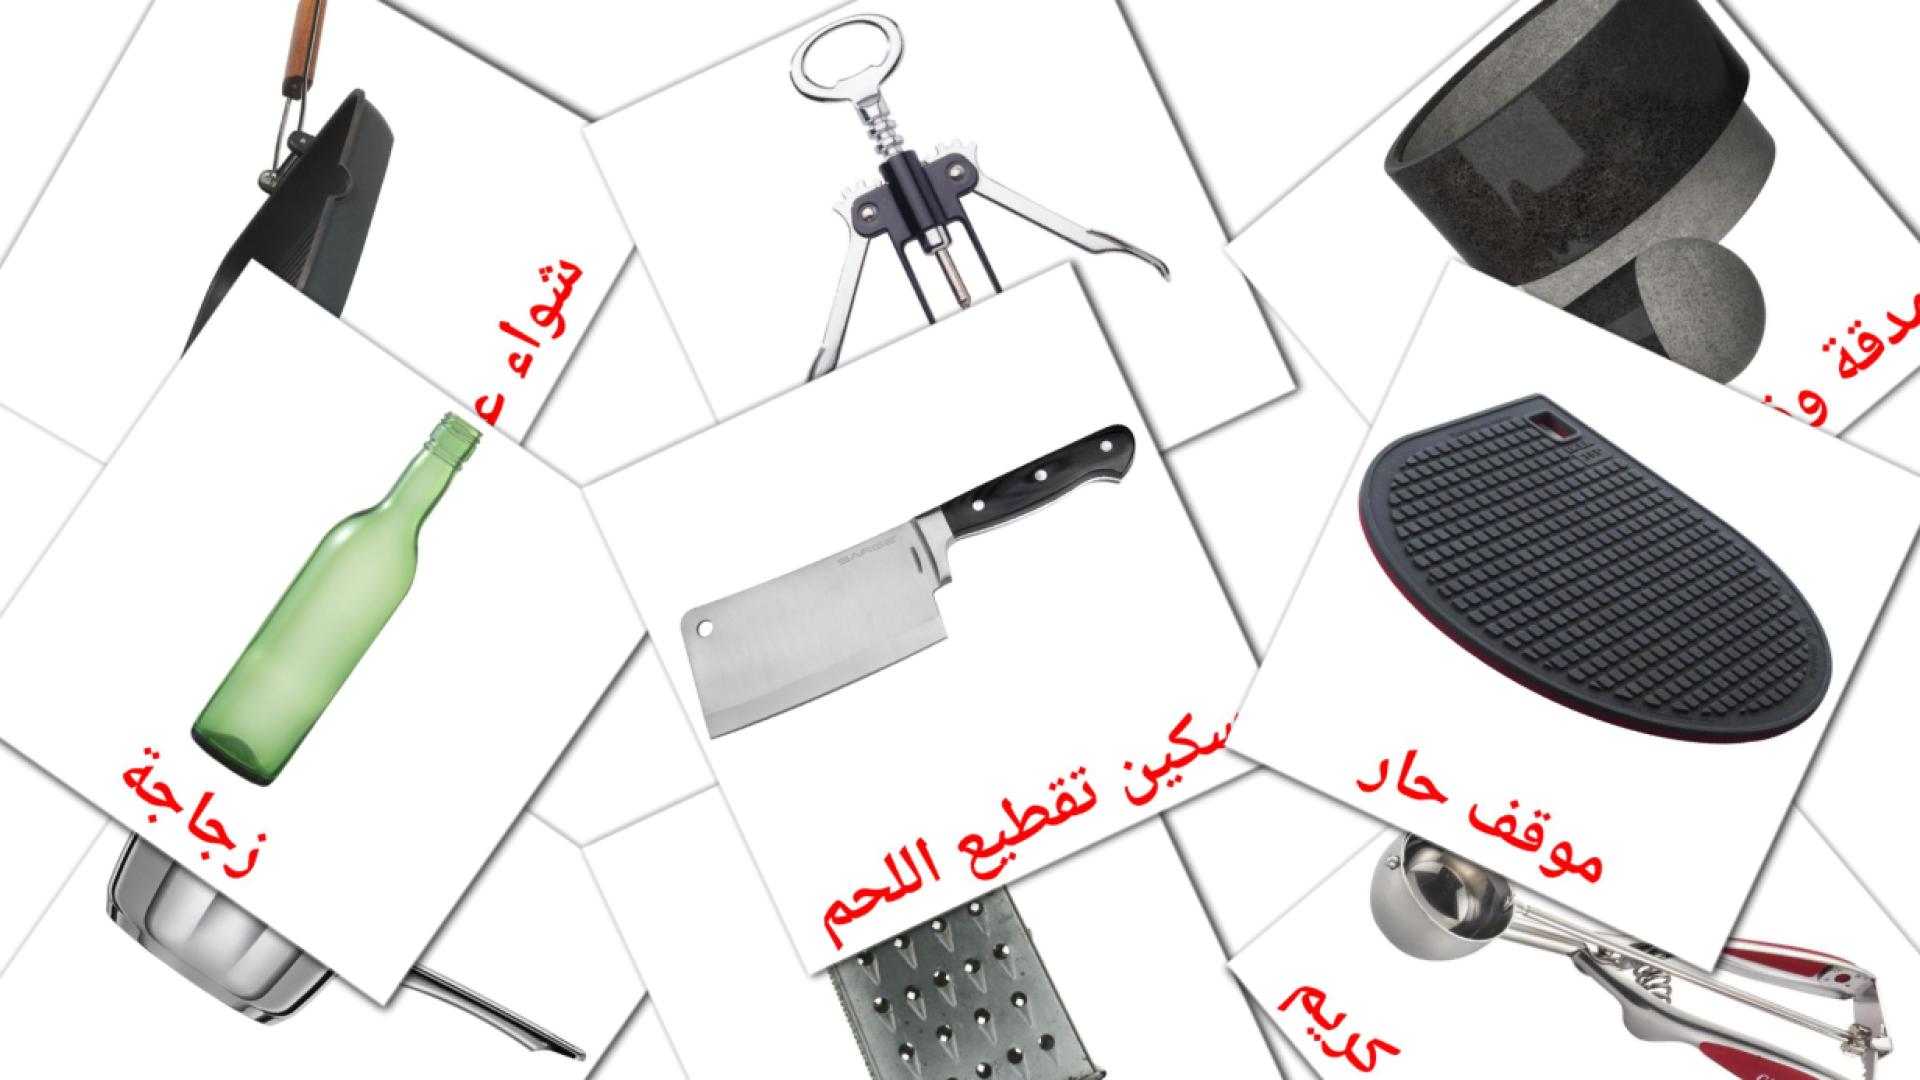 Utensili da cucina - Schede di vocabolario arabo